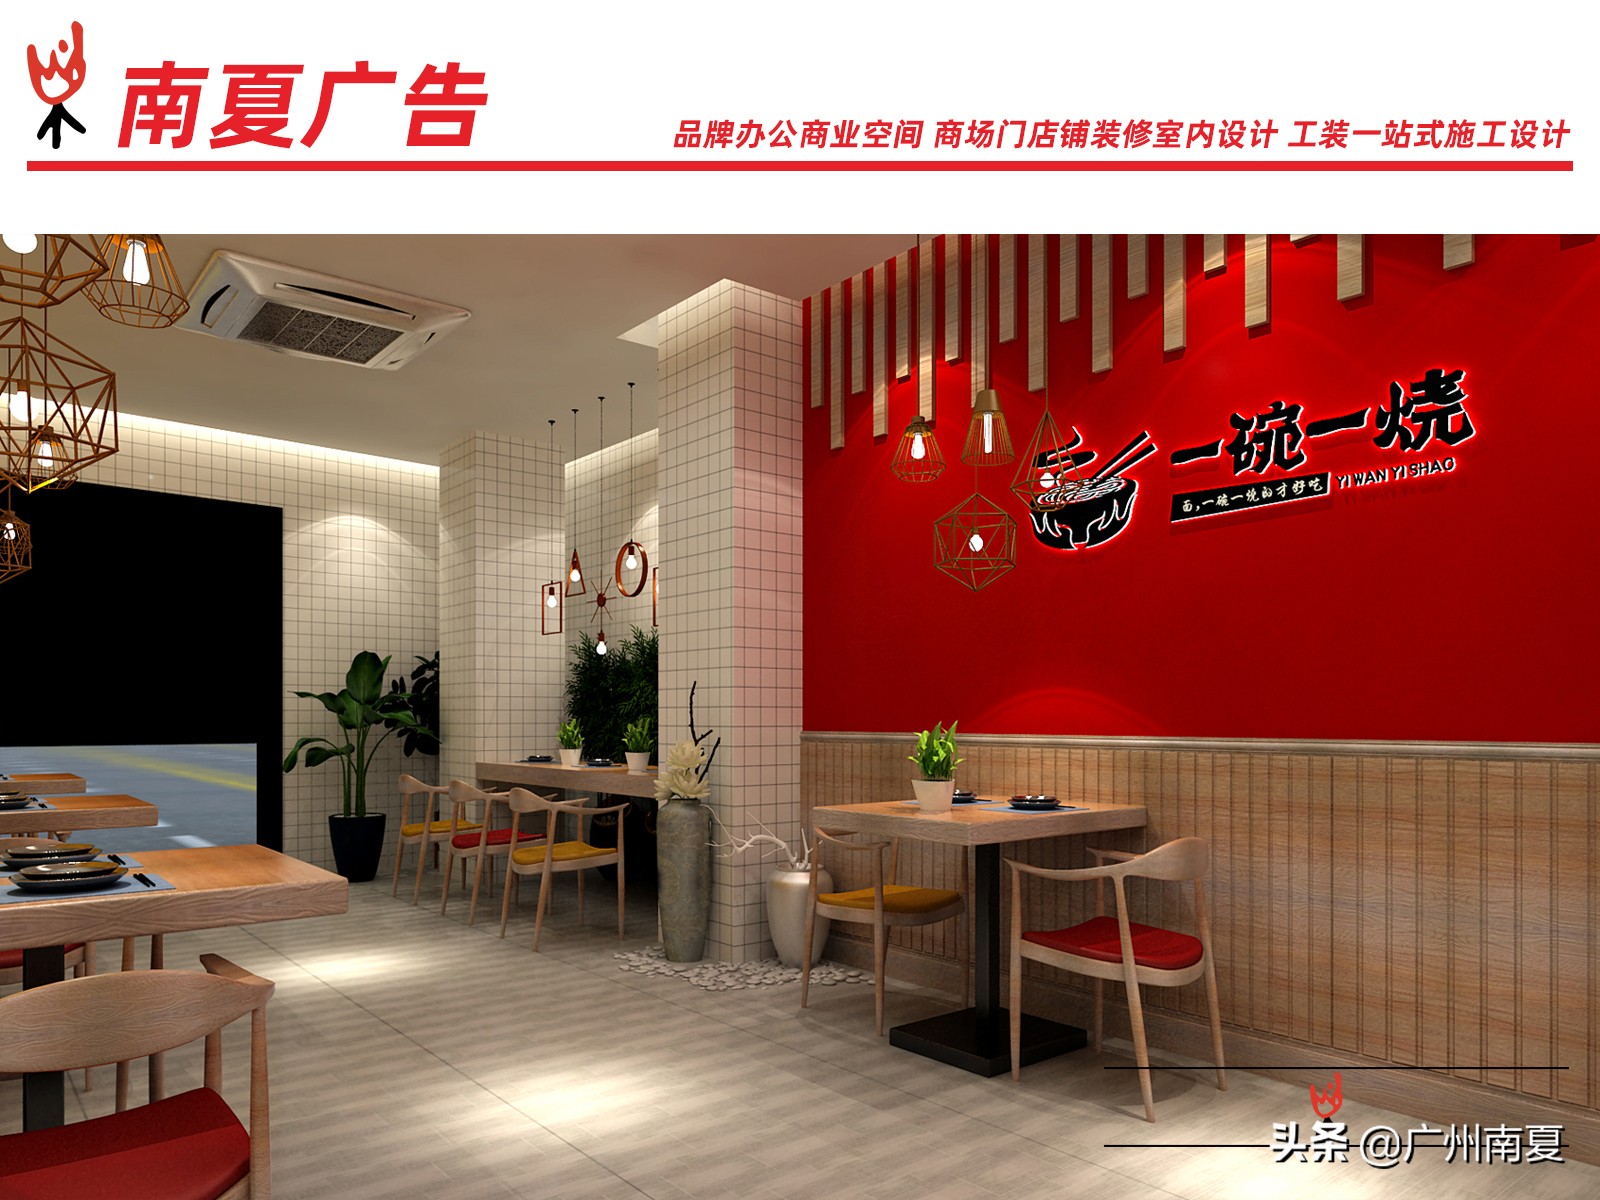 餐饮品牌 LOGO设计 SI设计 店招门头灯箱 创作南夏广告